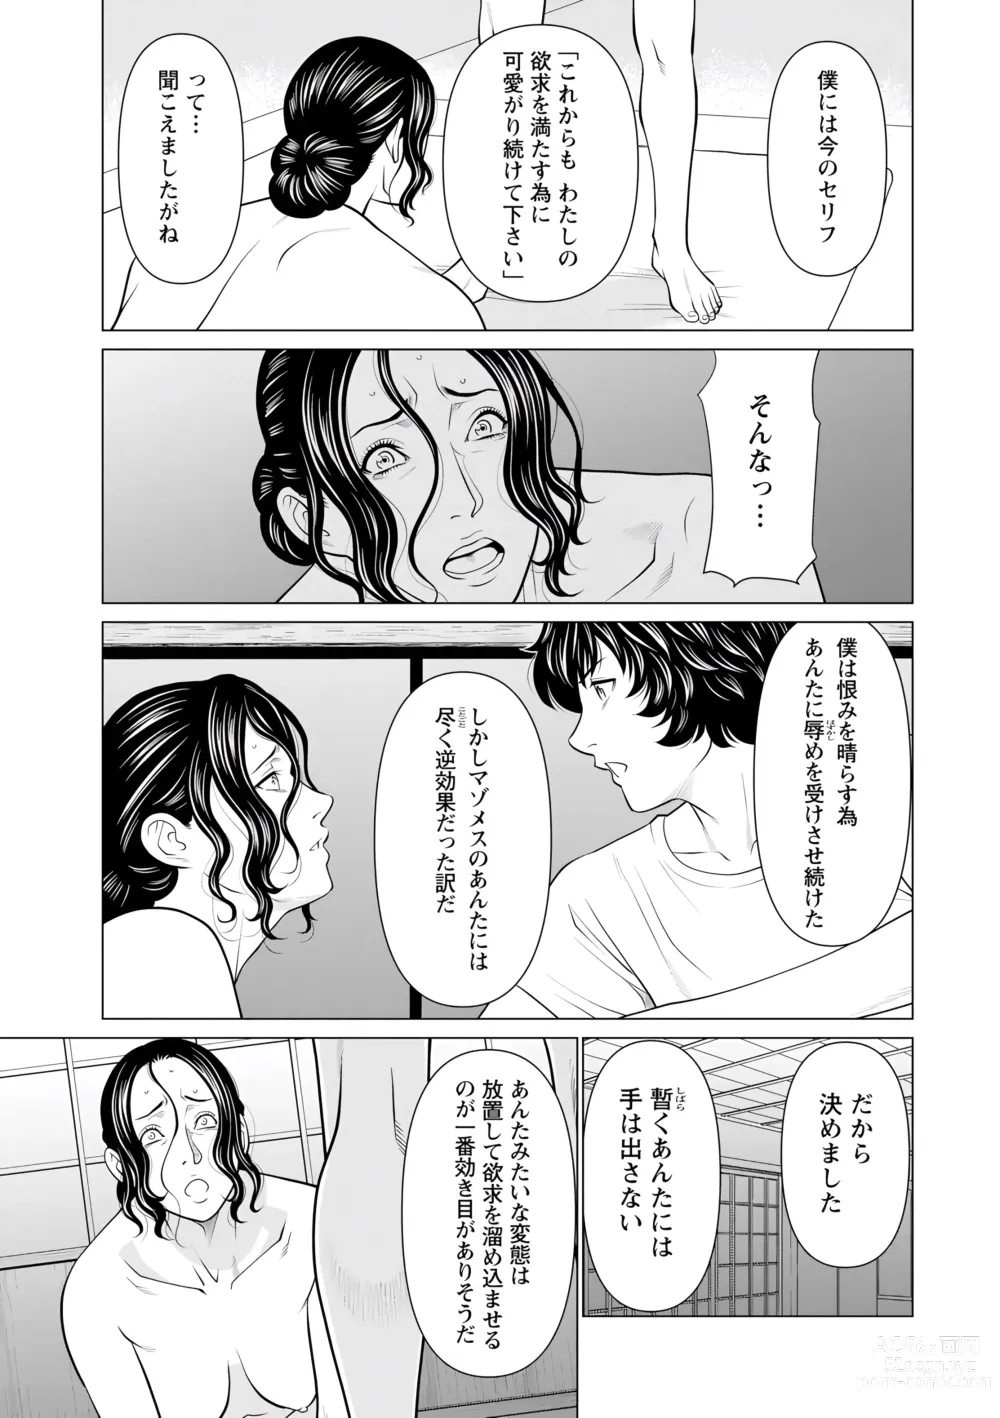 Page 11 of manga Rengoku no Sono - The Garden of Purgatory 2